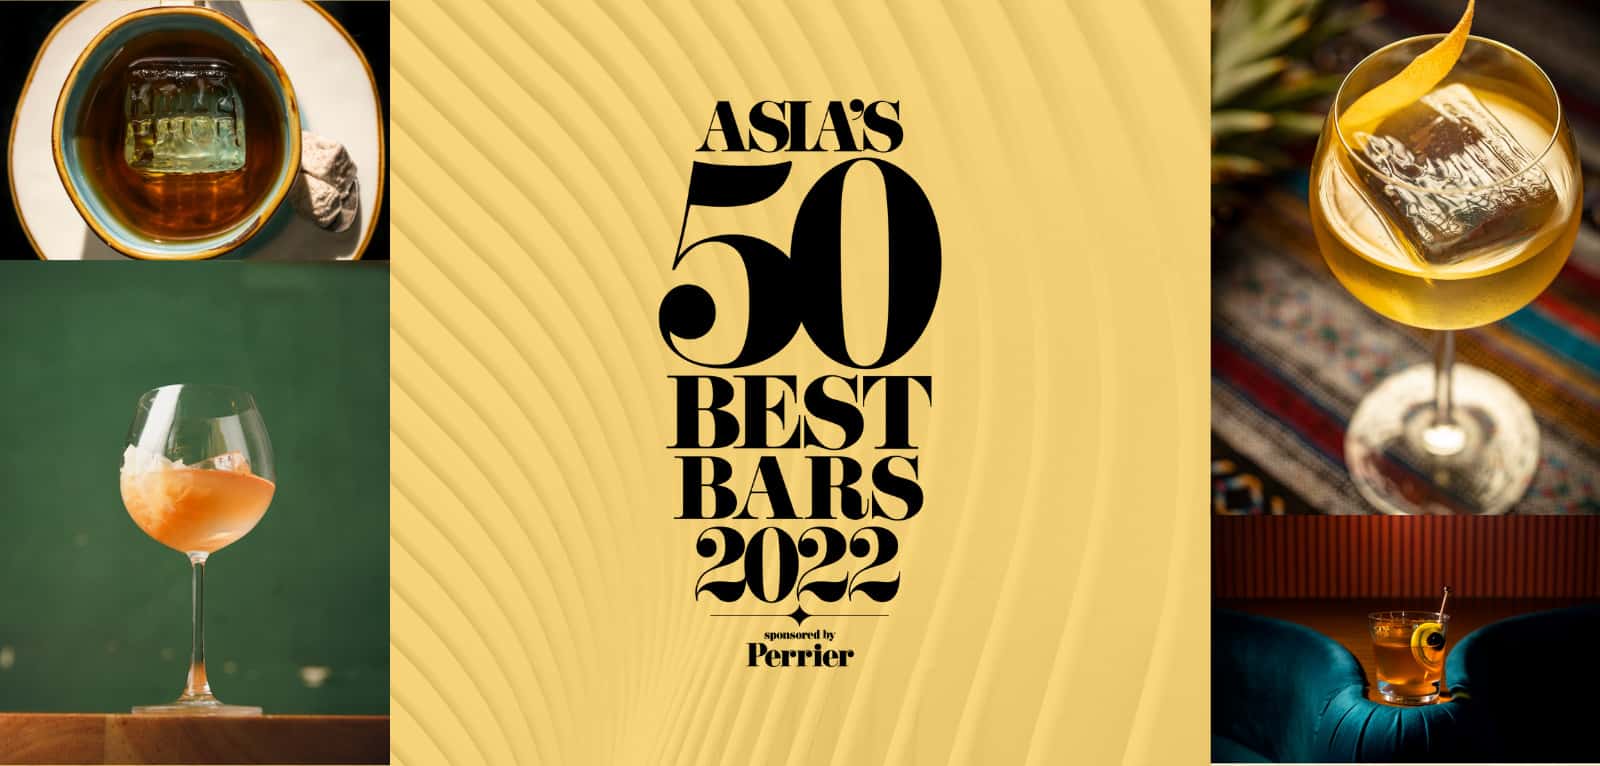 Asia’s 50 Best Bars 2022 : RDV le 28 avril